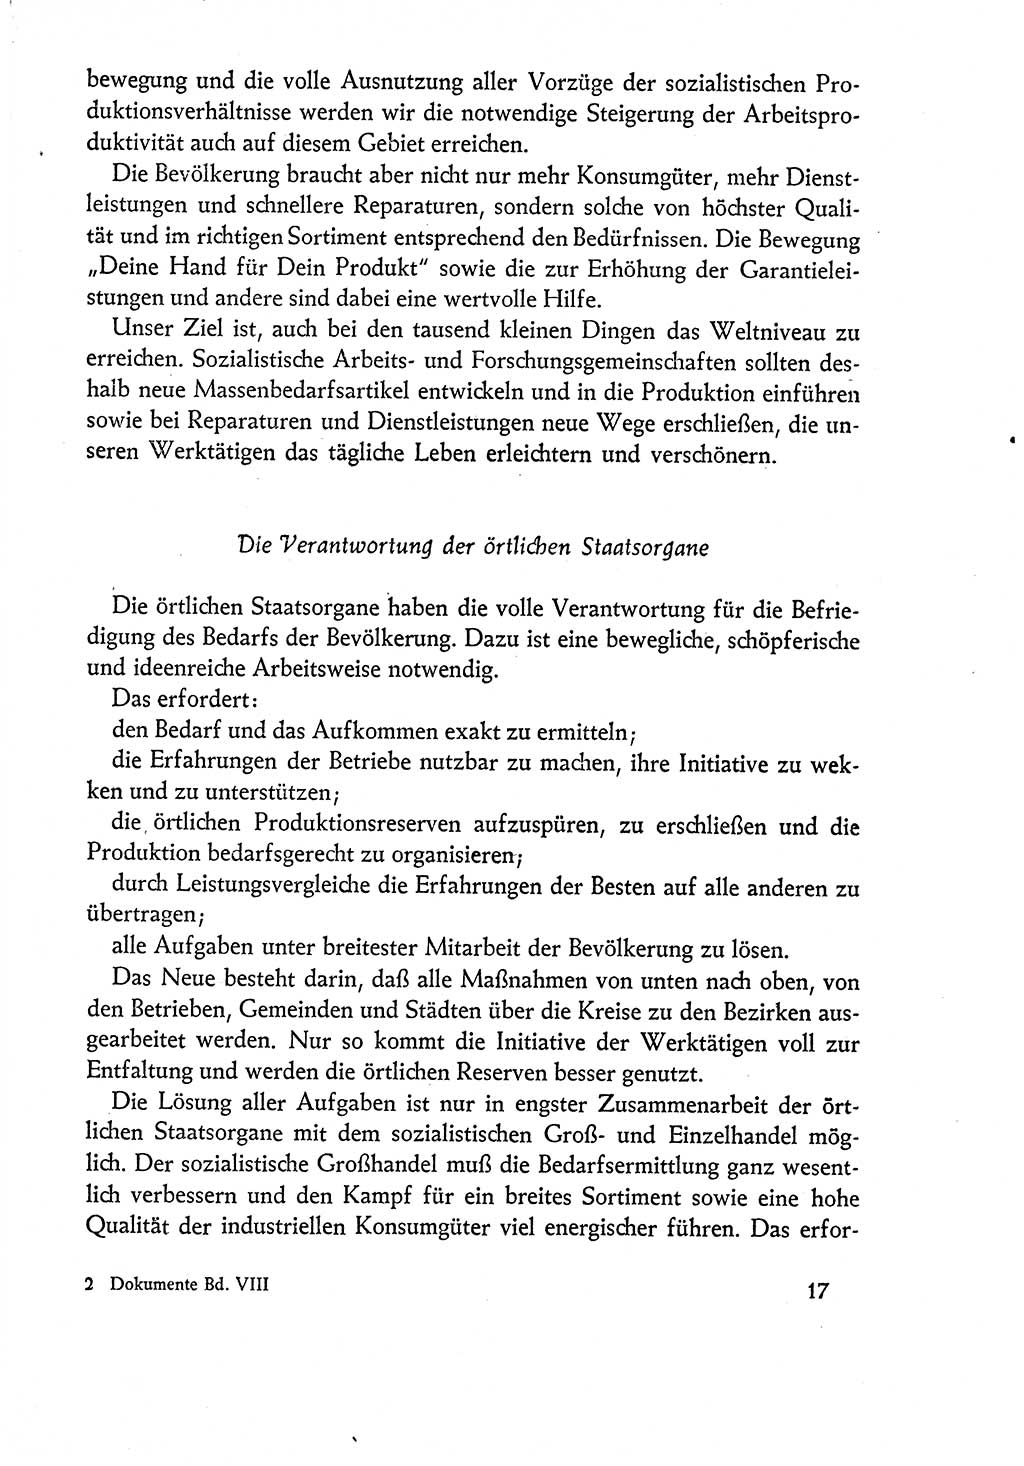 Dokumente der Sozialistischen Einheitspartei Deutschlands (SED) [Deutsche Demokratische Republik (DDR)] 1960-1961, Seite 17 (Dok. SED DDR 1960-1961, S. 17)